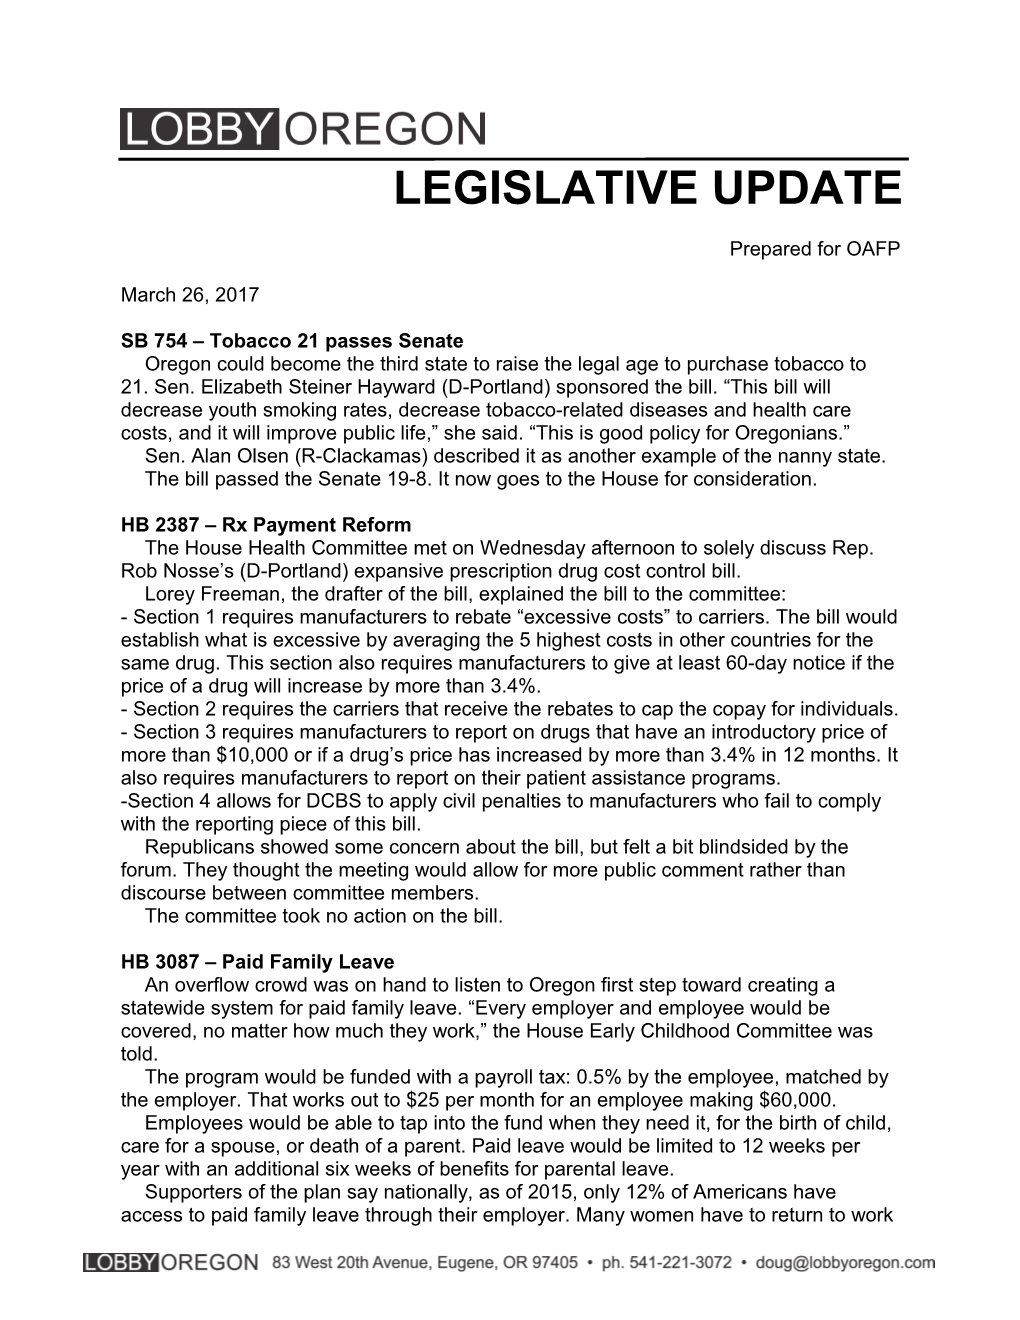 SB 754 Tobacco 21 Passes Senate